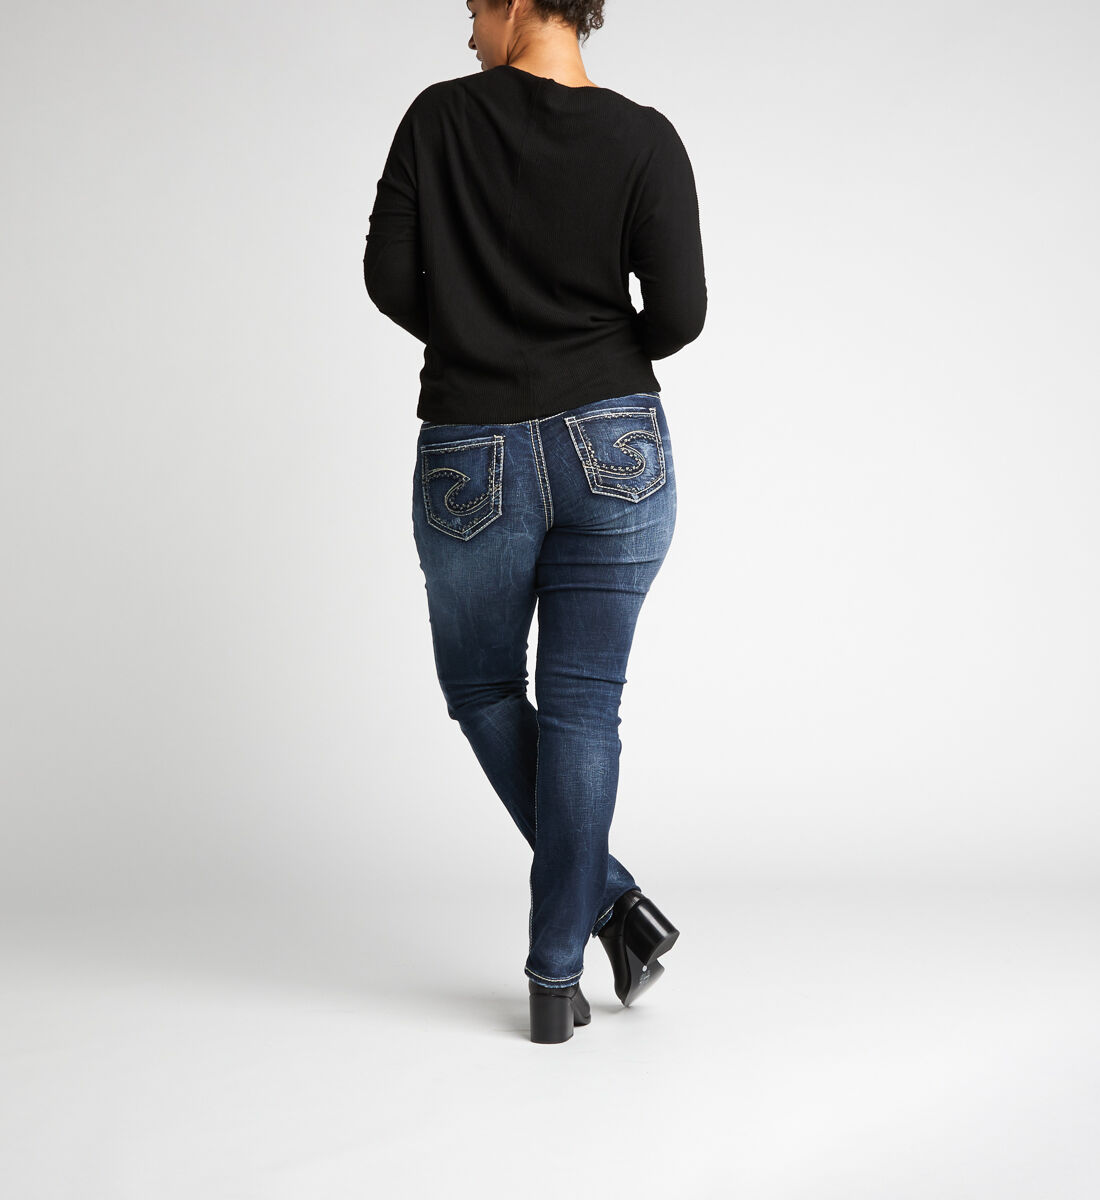 Suki Mid Rise Straight Leg Jeans Plus Size Back